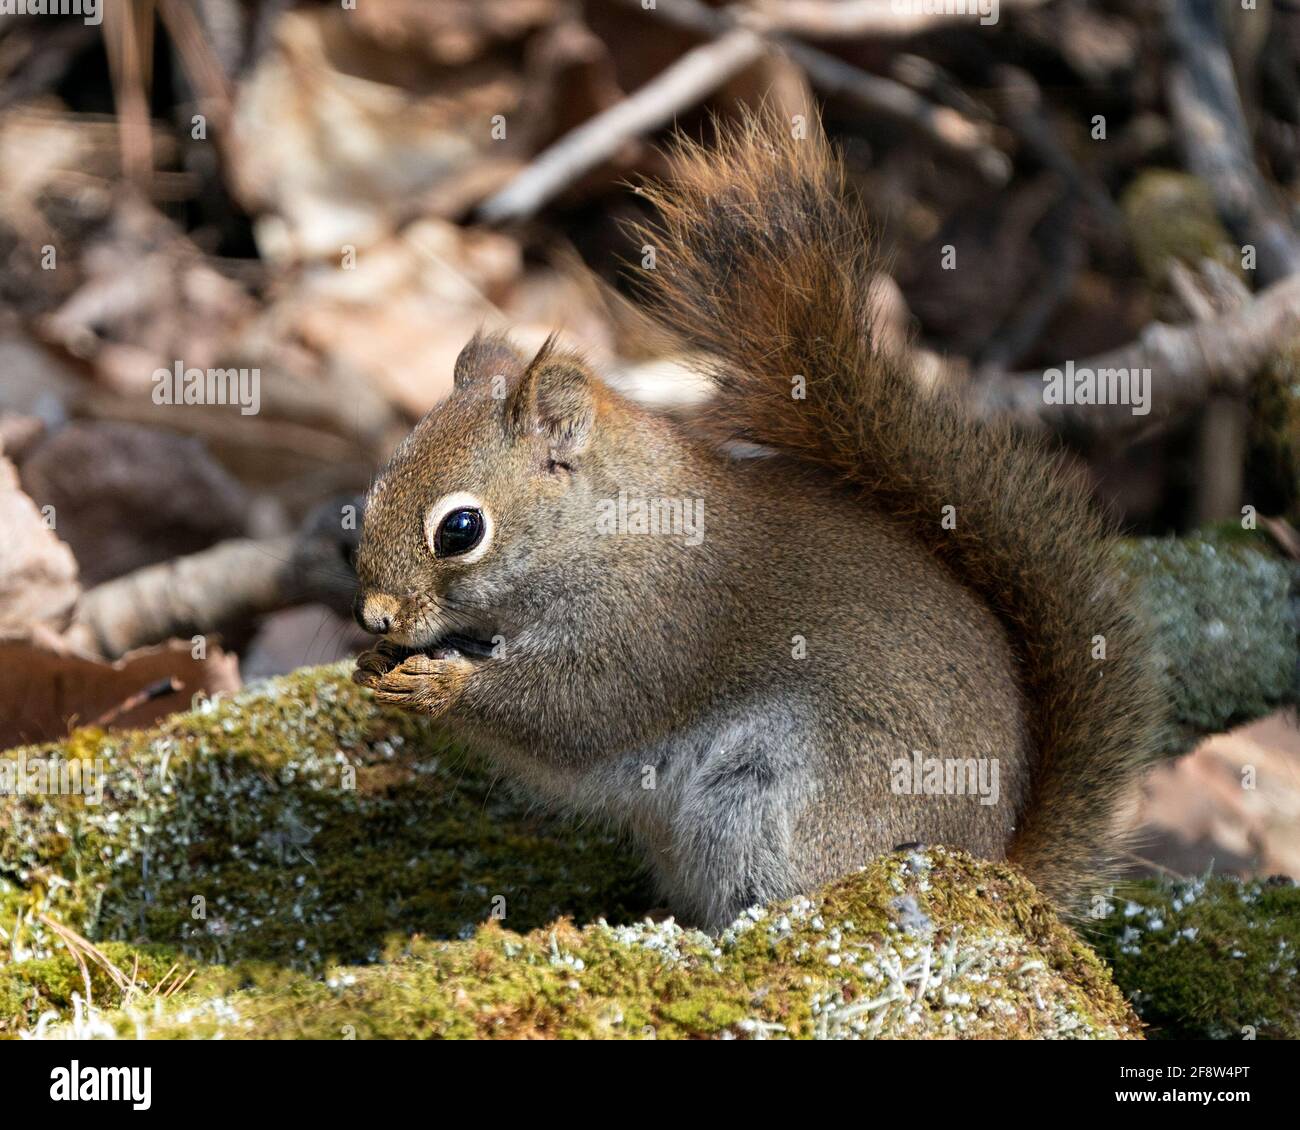 Nahaufnahme des Eichhörnchen-Profils, das auf einem Moosstumpf im Wald sitzt und buschigen Schwanz, braunes Fell und Pfoten mit unscharfem Hintergrund in seiner Umgebung zeigt Stockfoto